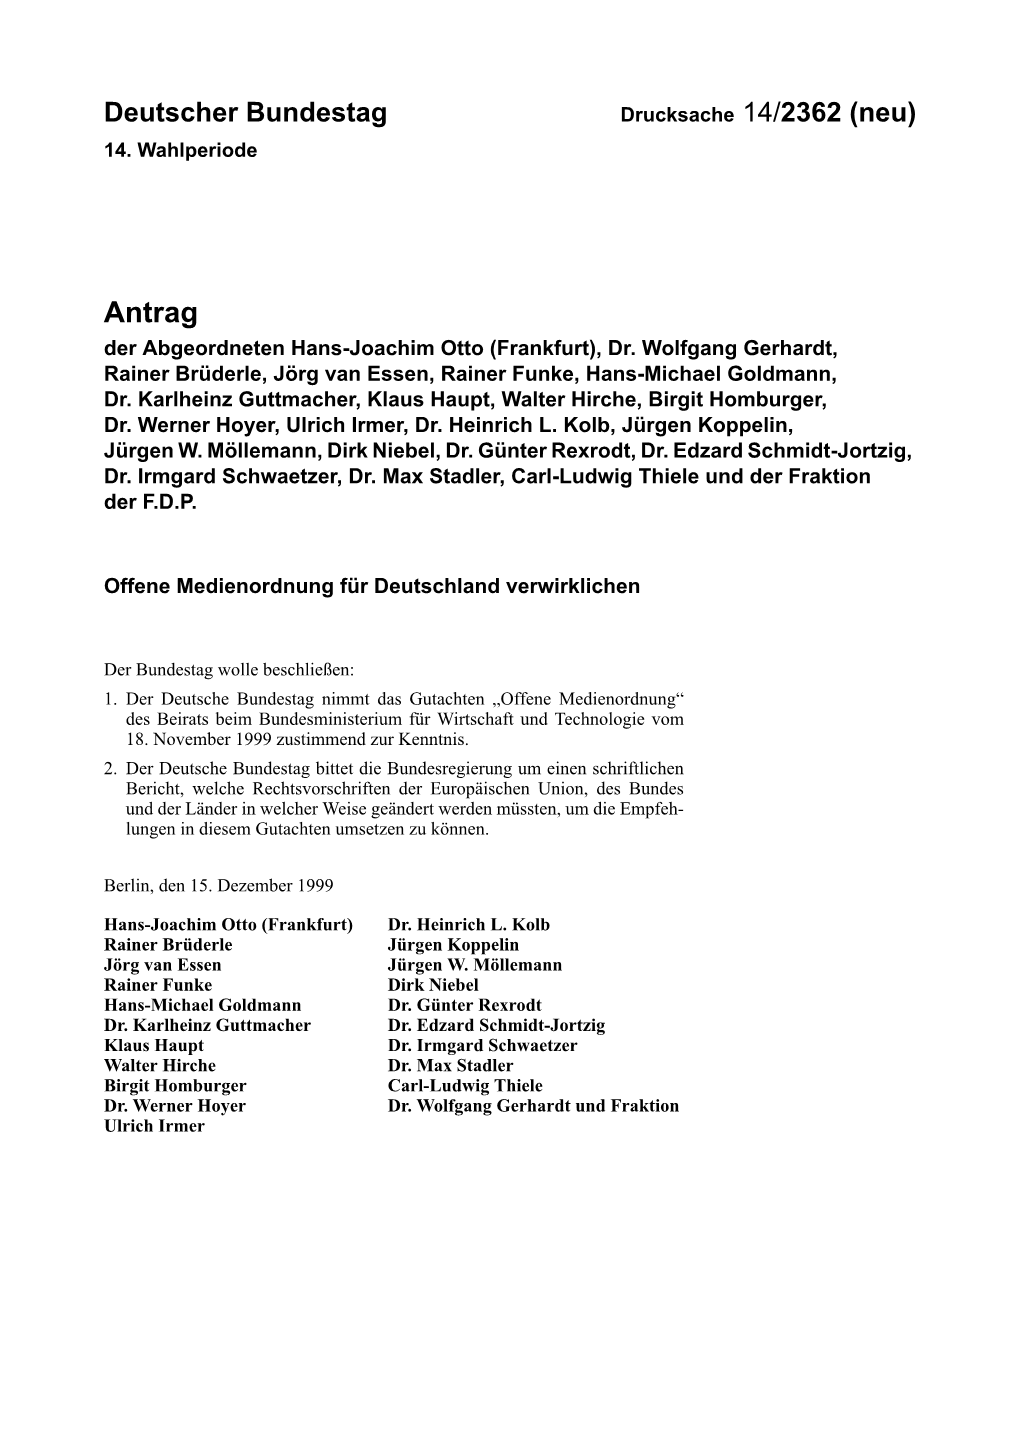 Antrag Der Abgeordneten Hans-Joachim Otto (Frankfurt), Dr